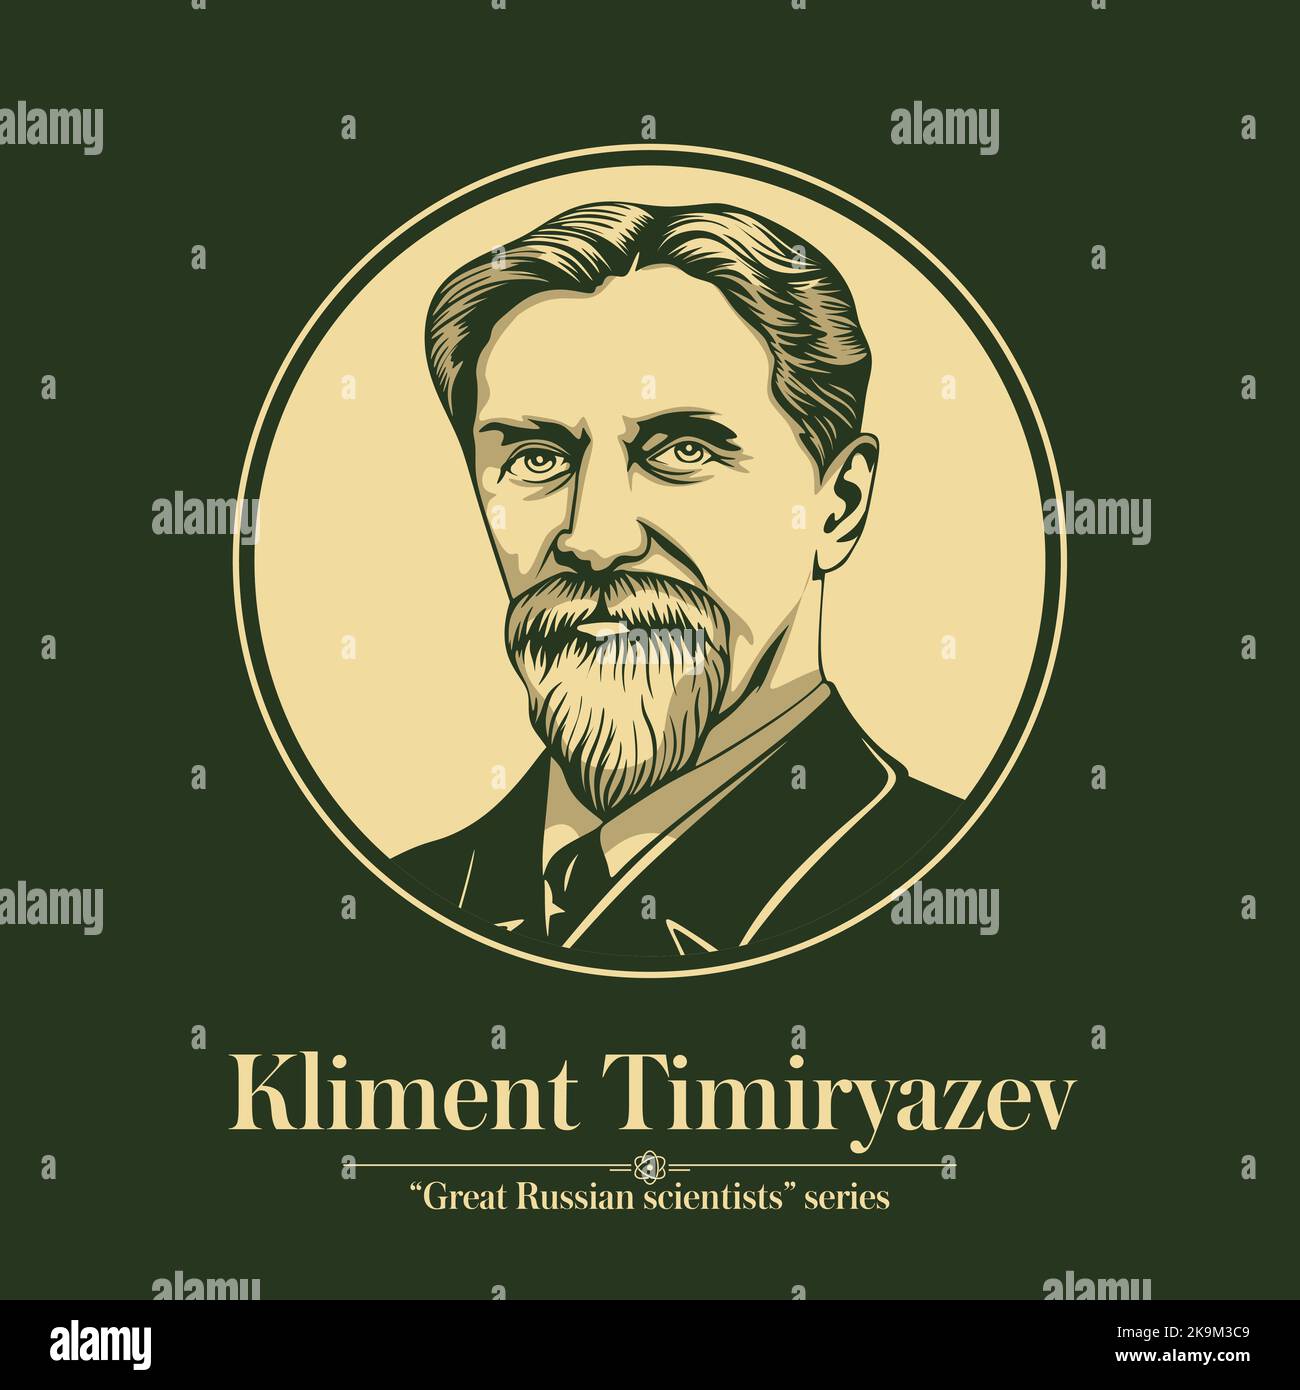 La série des grands scientifiques russes. Kliment Timiryazev était un botaniste et physiologiste impérial russe et un promoteur majeur de la théorie de l'évolution Illustration de Vecteur